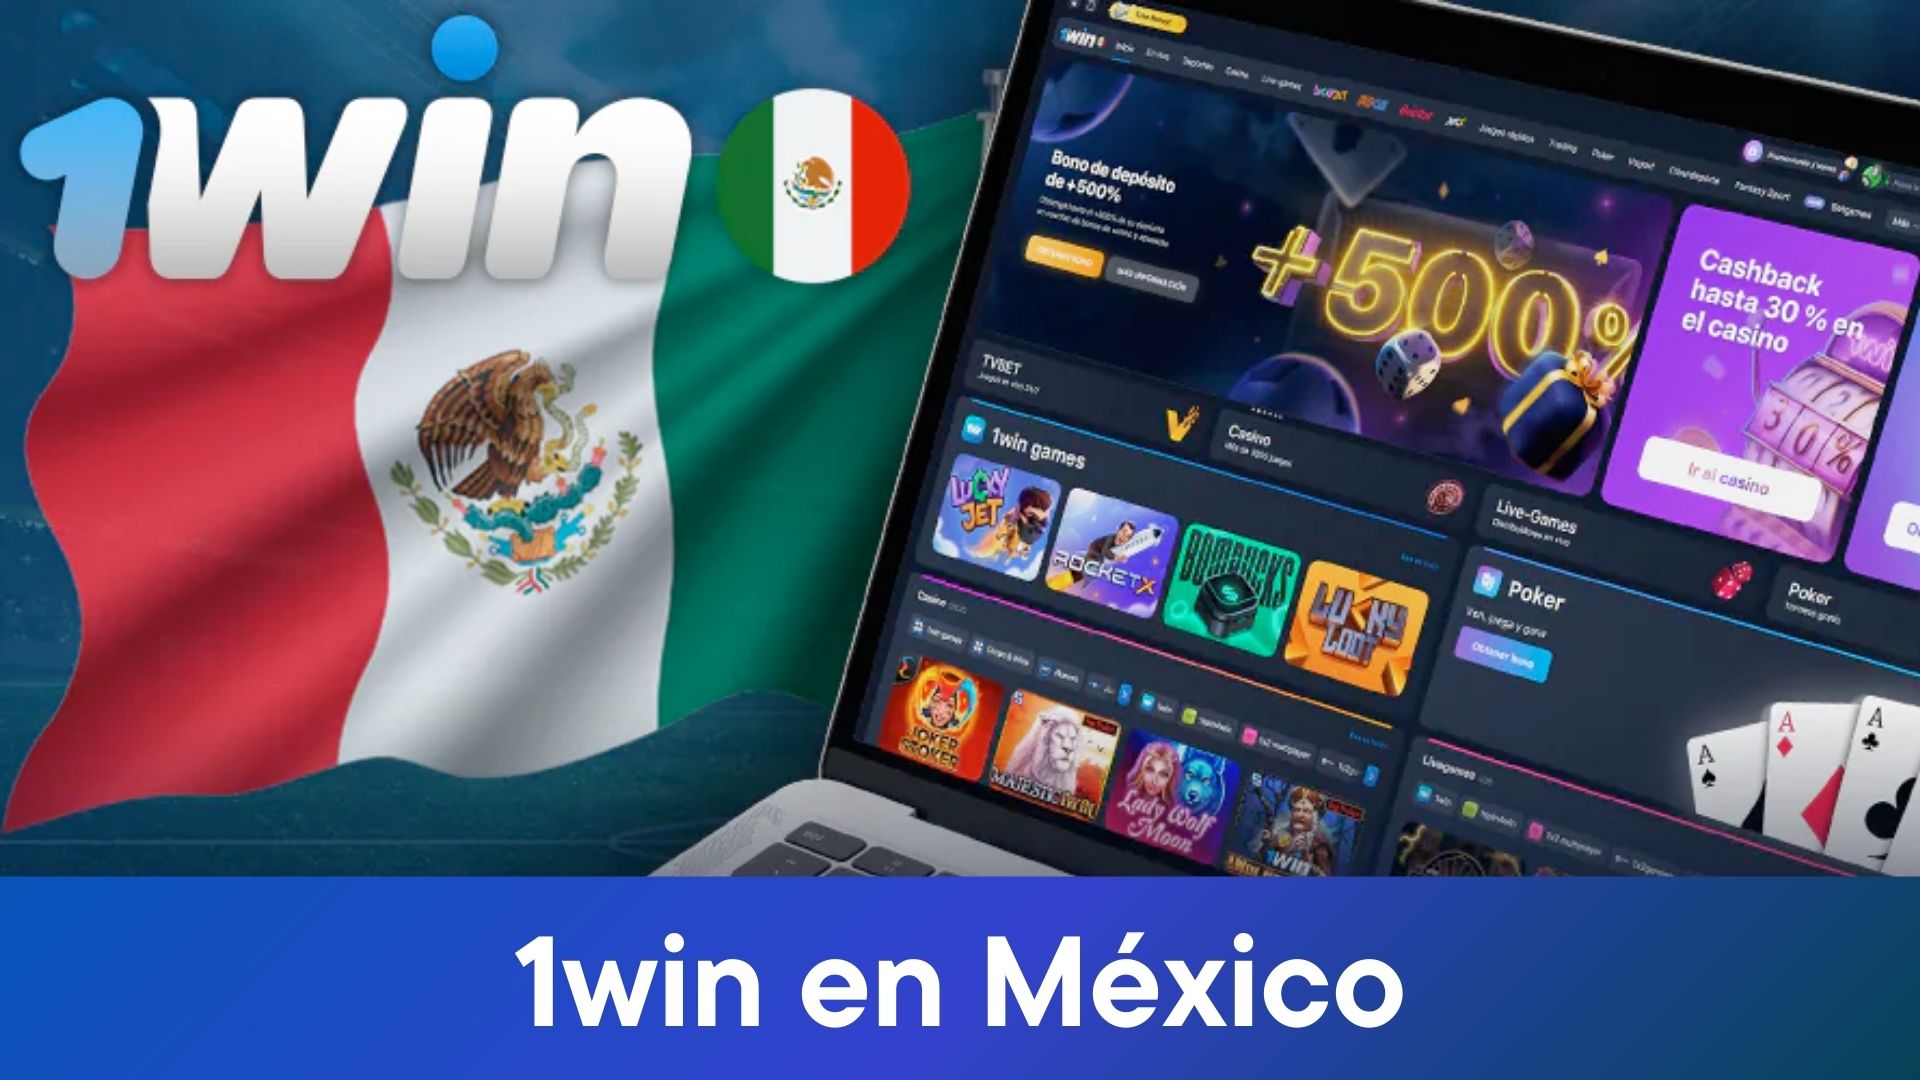 Un examen completo de la plataforma de juego en línea ofrecida por 1win en México